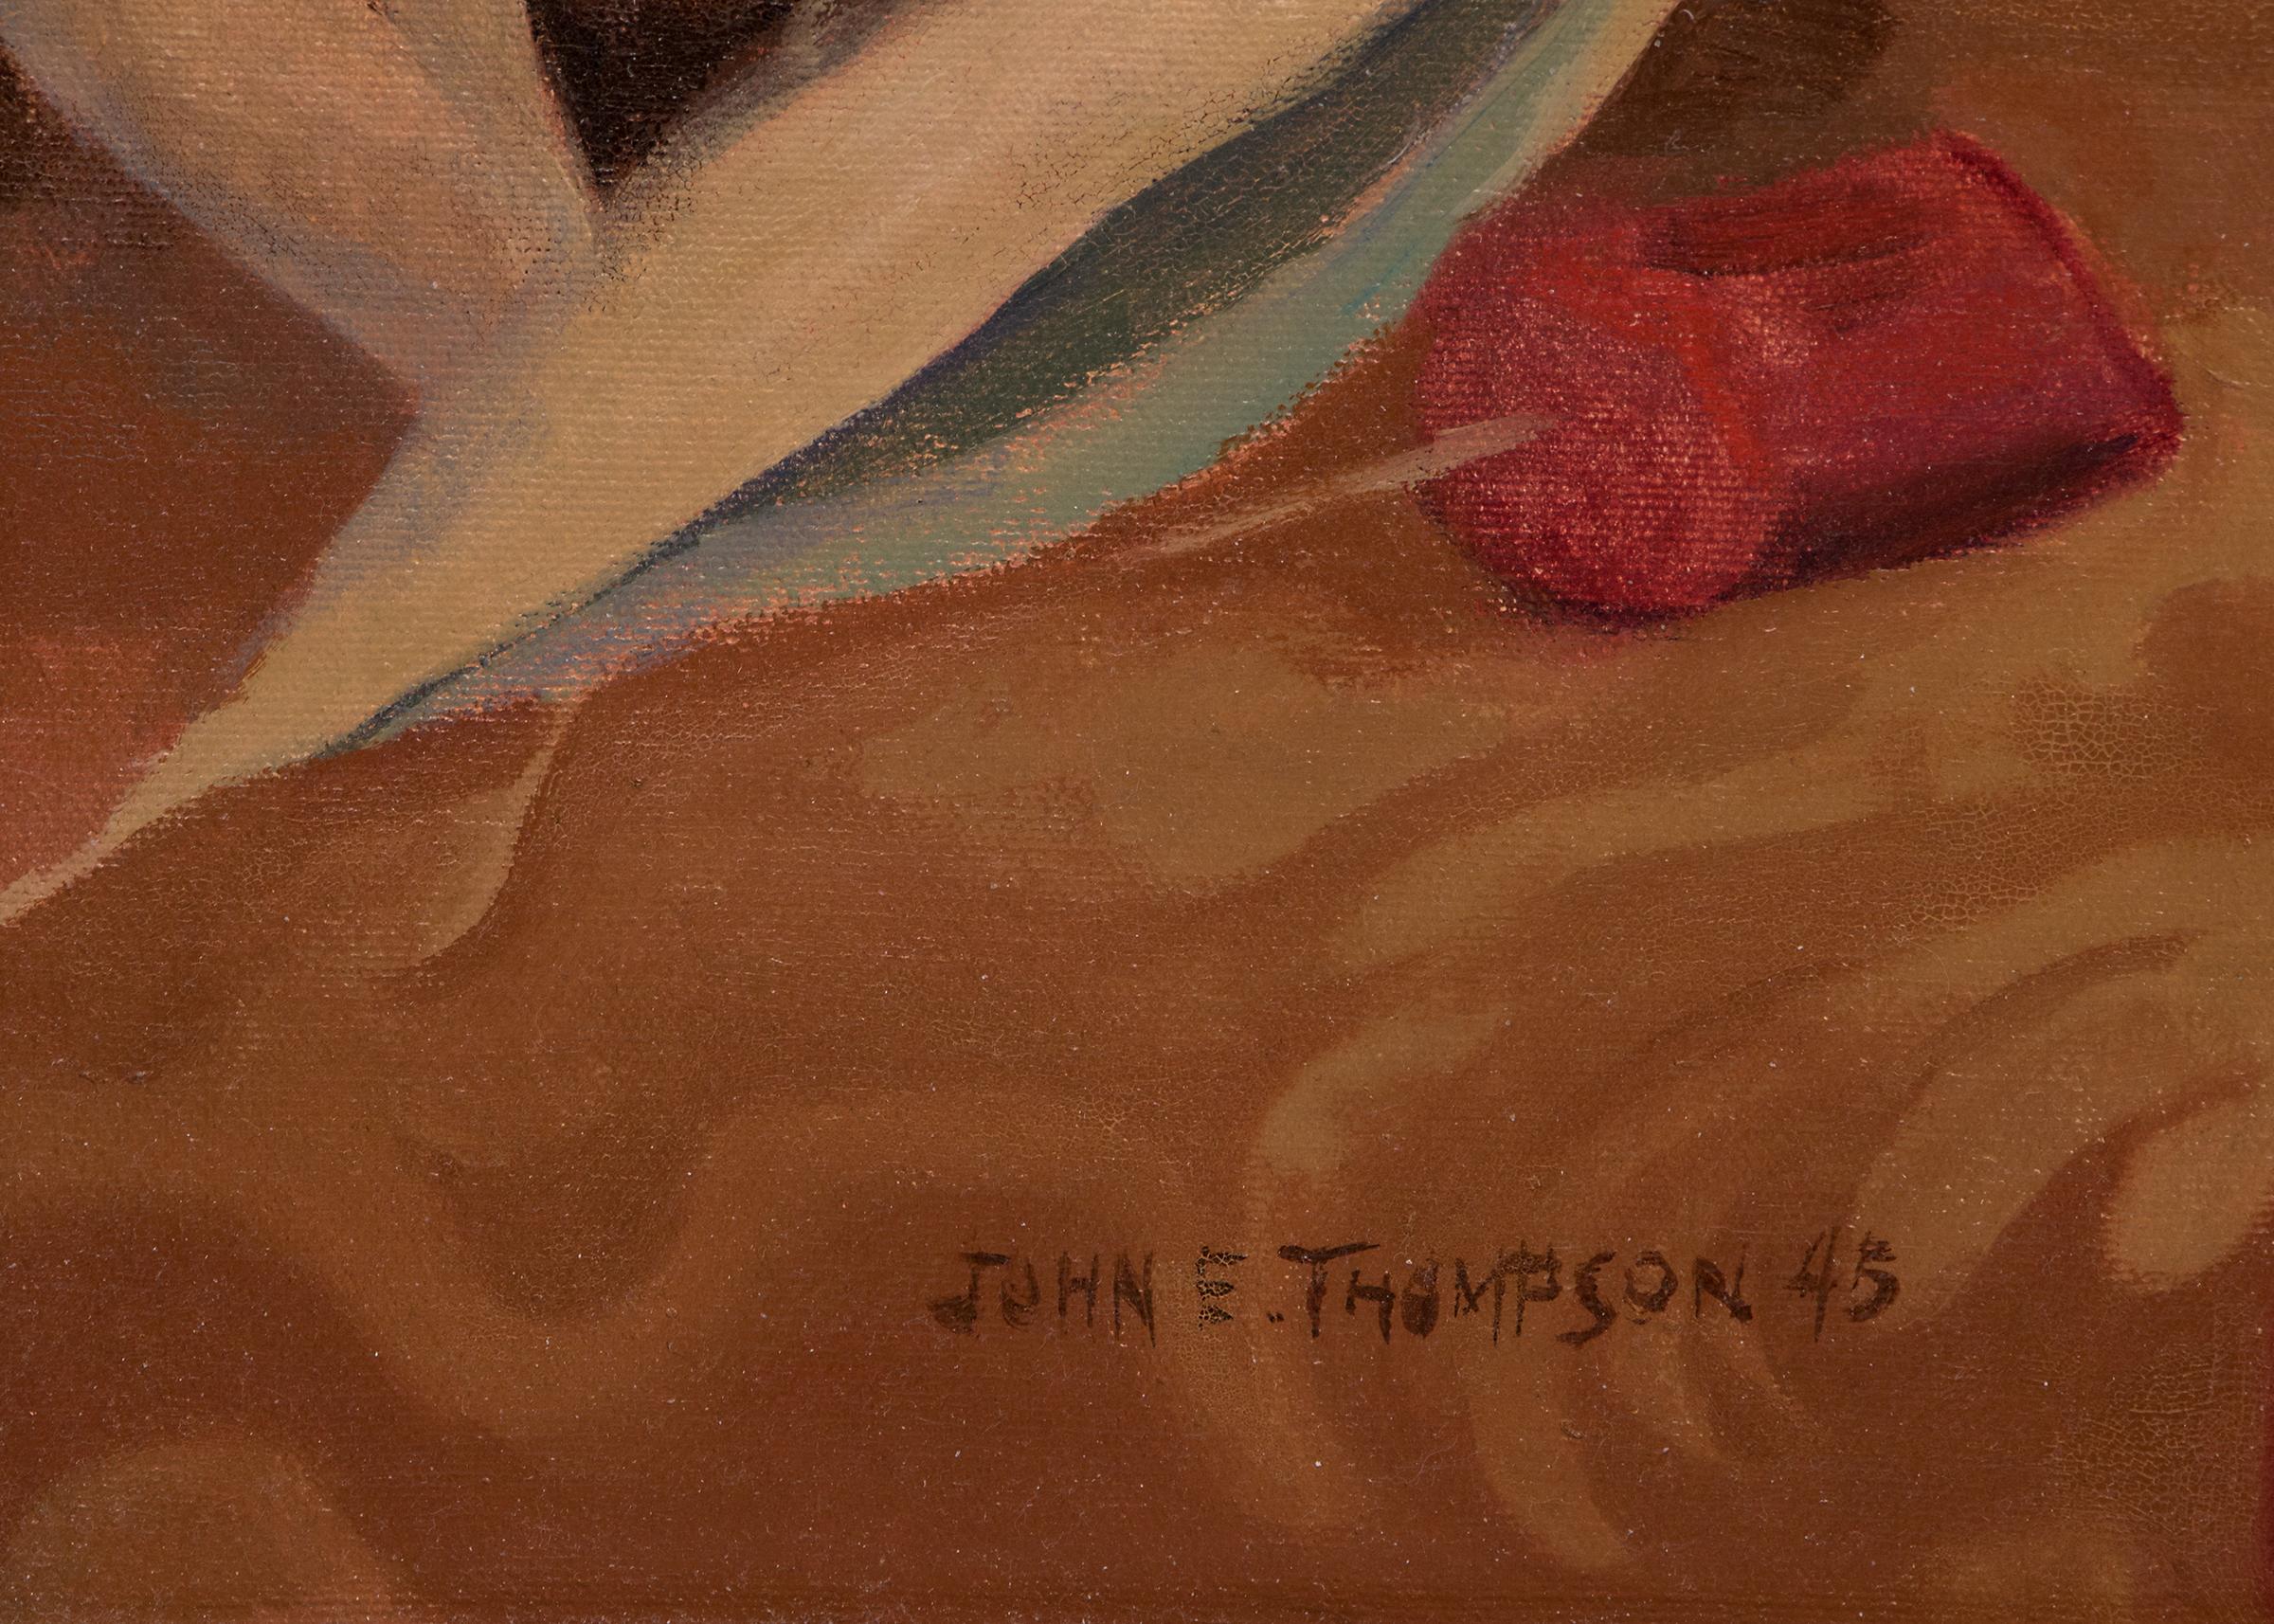 Original-Ölgemälde aus dem Jahr 1945 mit einem Interieur-Stillleben mit Blumenvase, Teetasse und Vorhang von John E. Thompson (1882-1945), einem Modernisten aus Colorado im 20. Öl auf Leinwand, Farben: rot, blau, gold, lila, rosa und gelb.